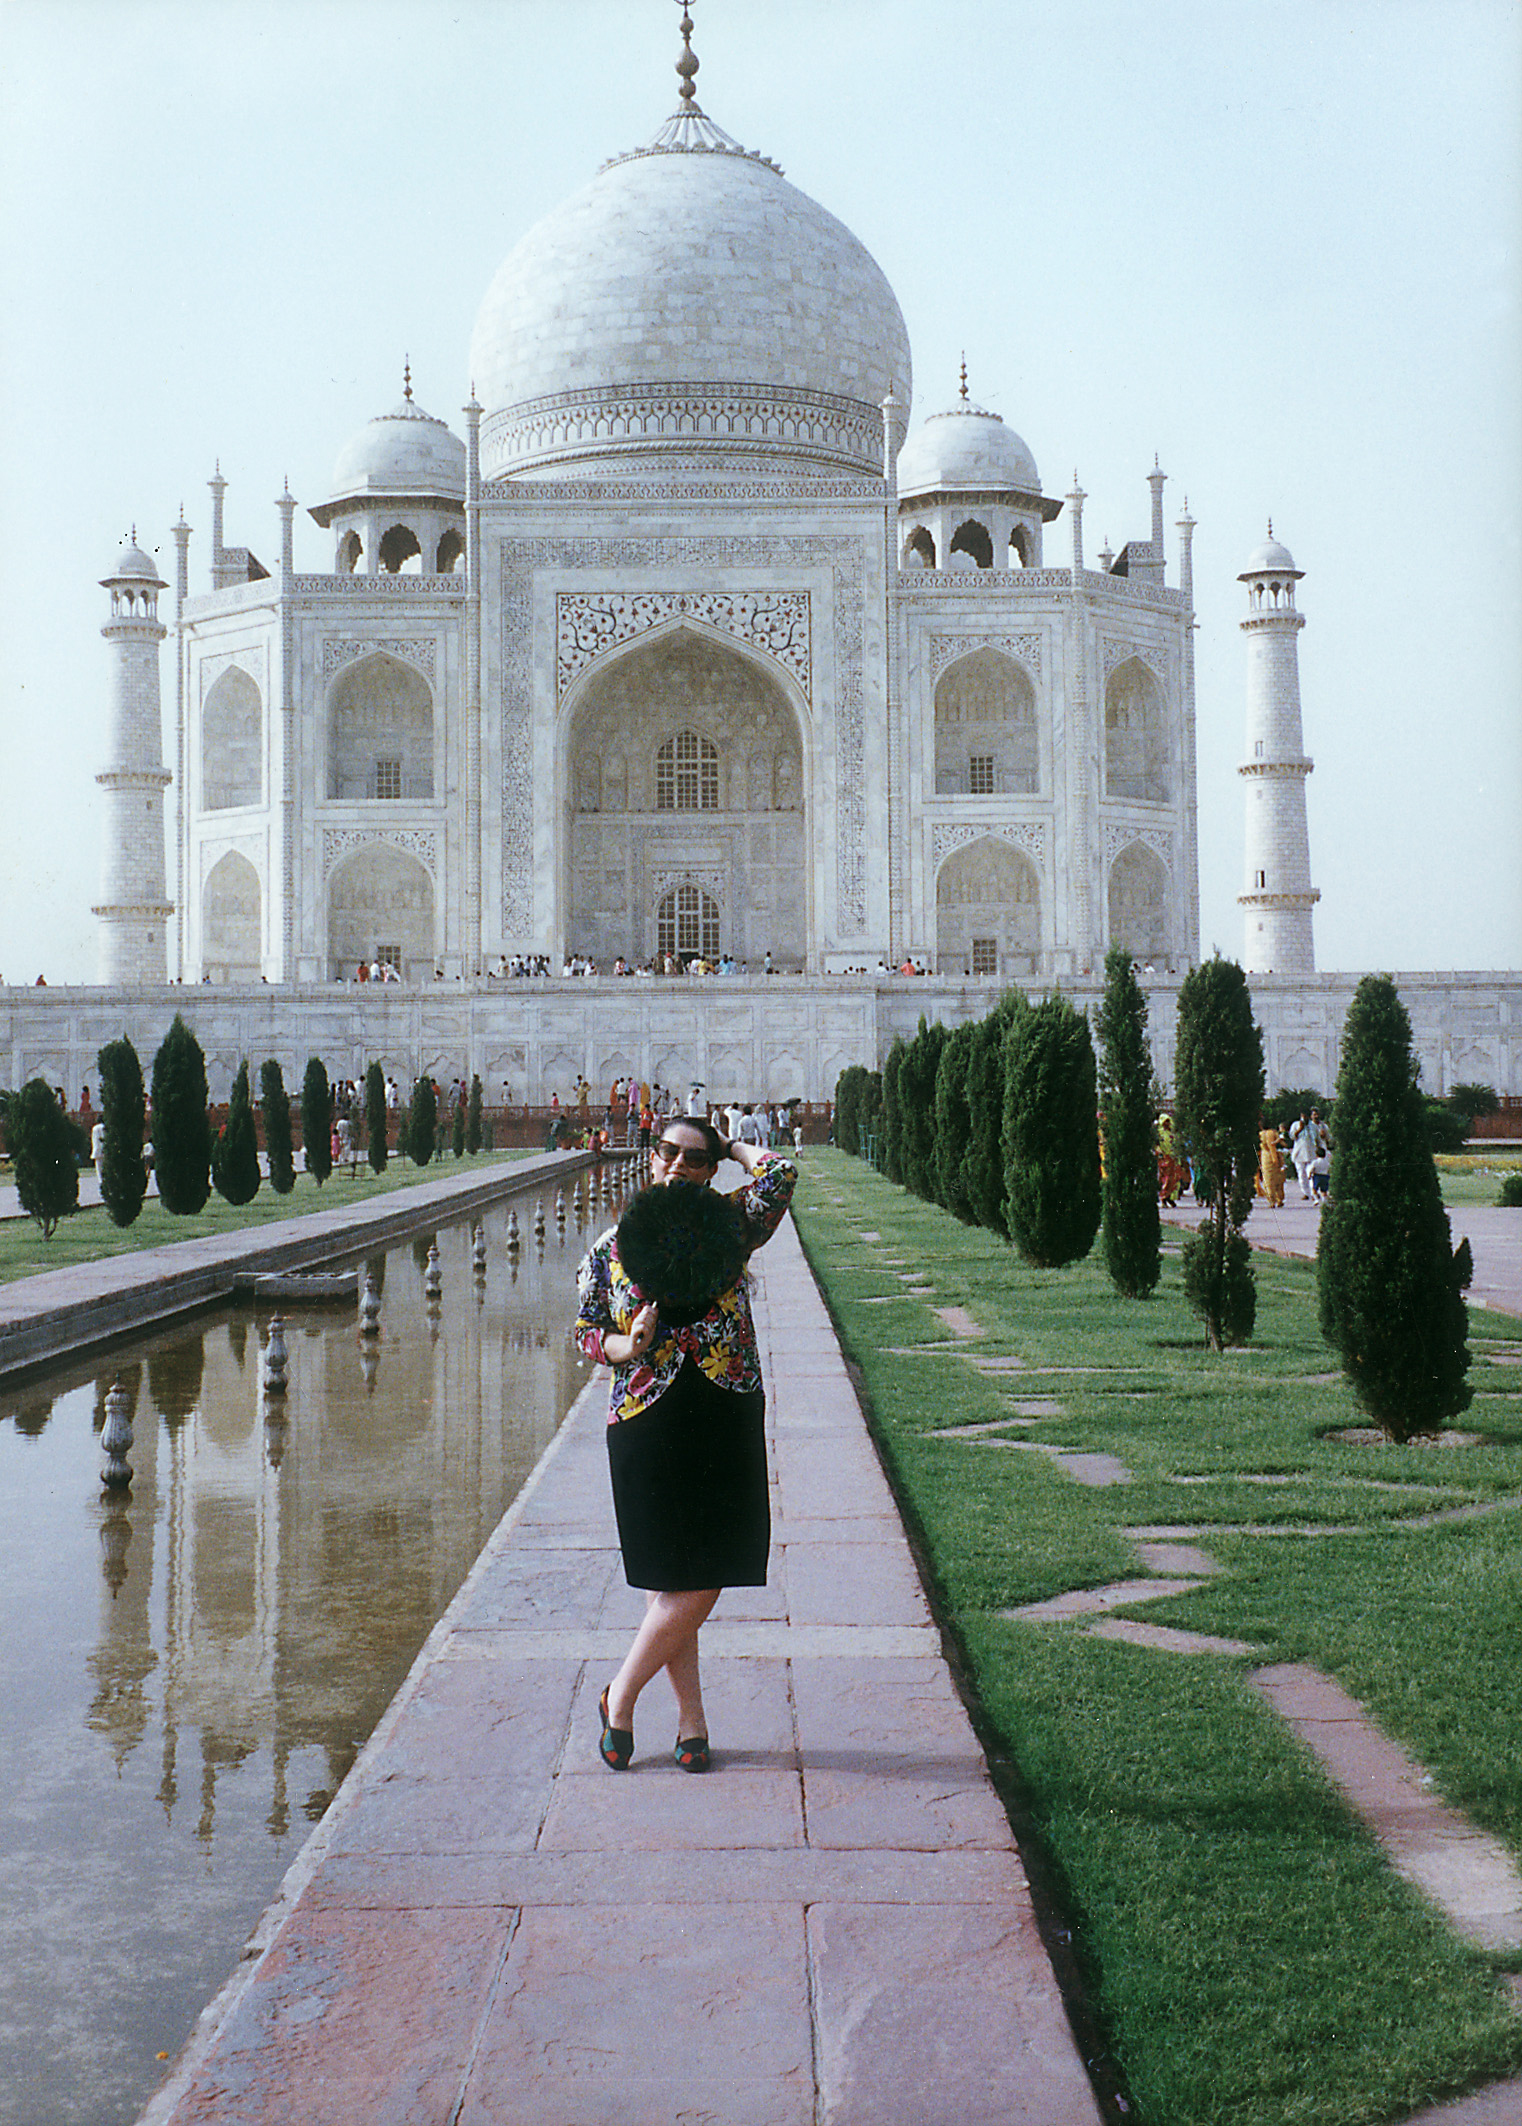 În faţa sublimului Taj Mahal